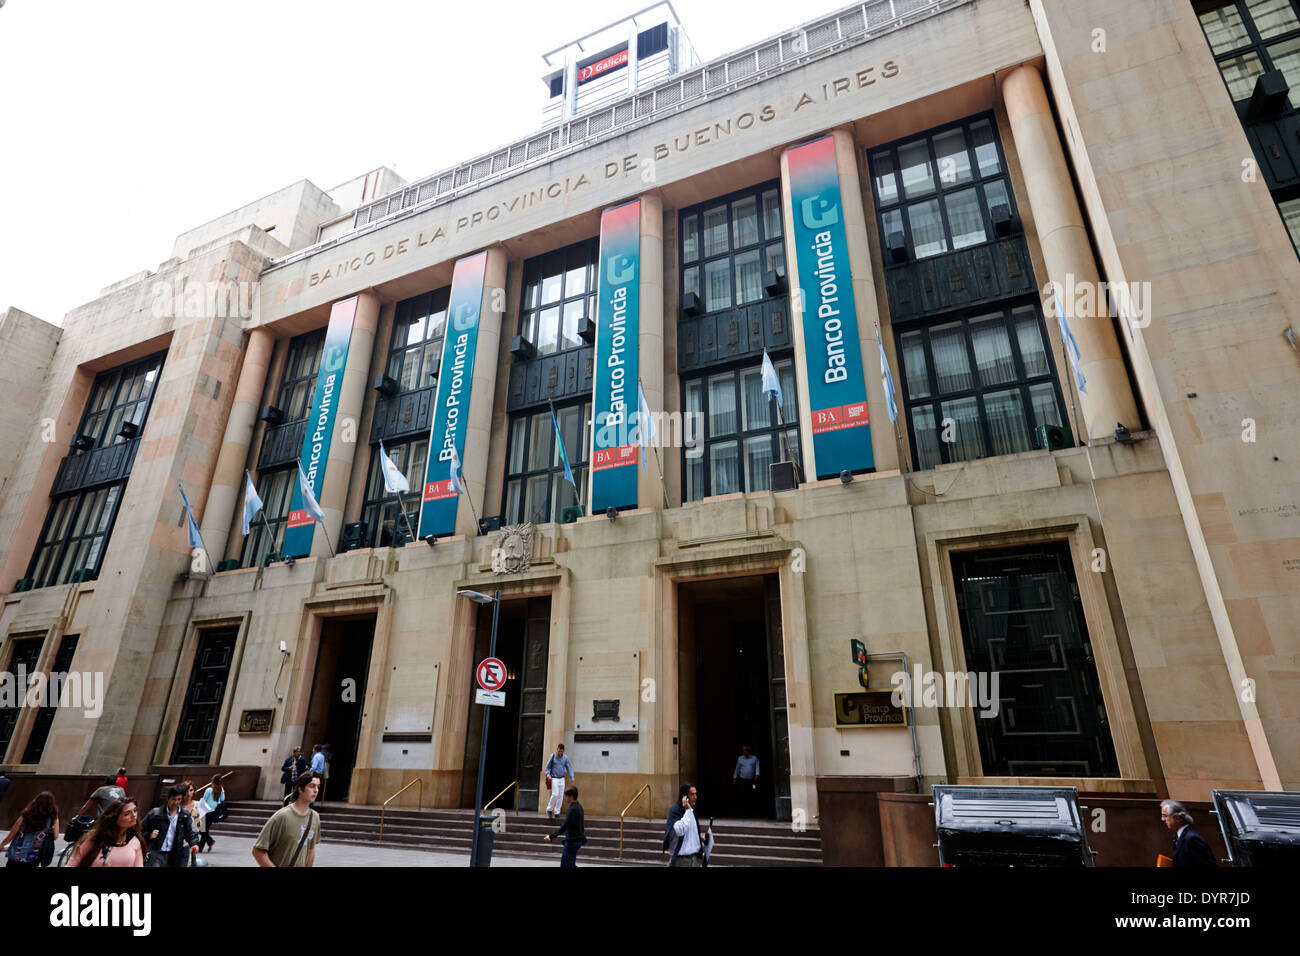 Banco de la provincia de Buenos Aires Argentina Stock Photo